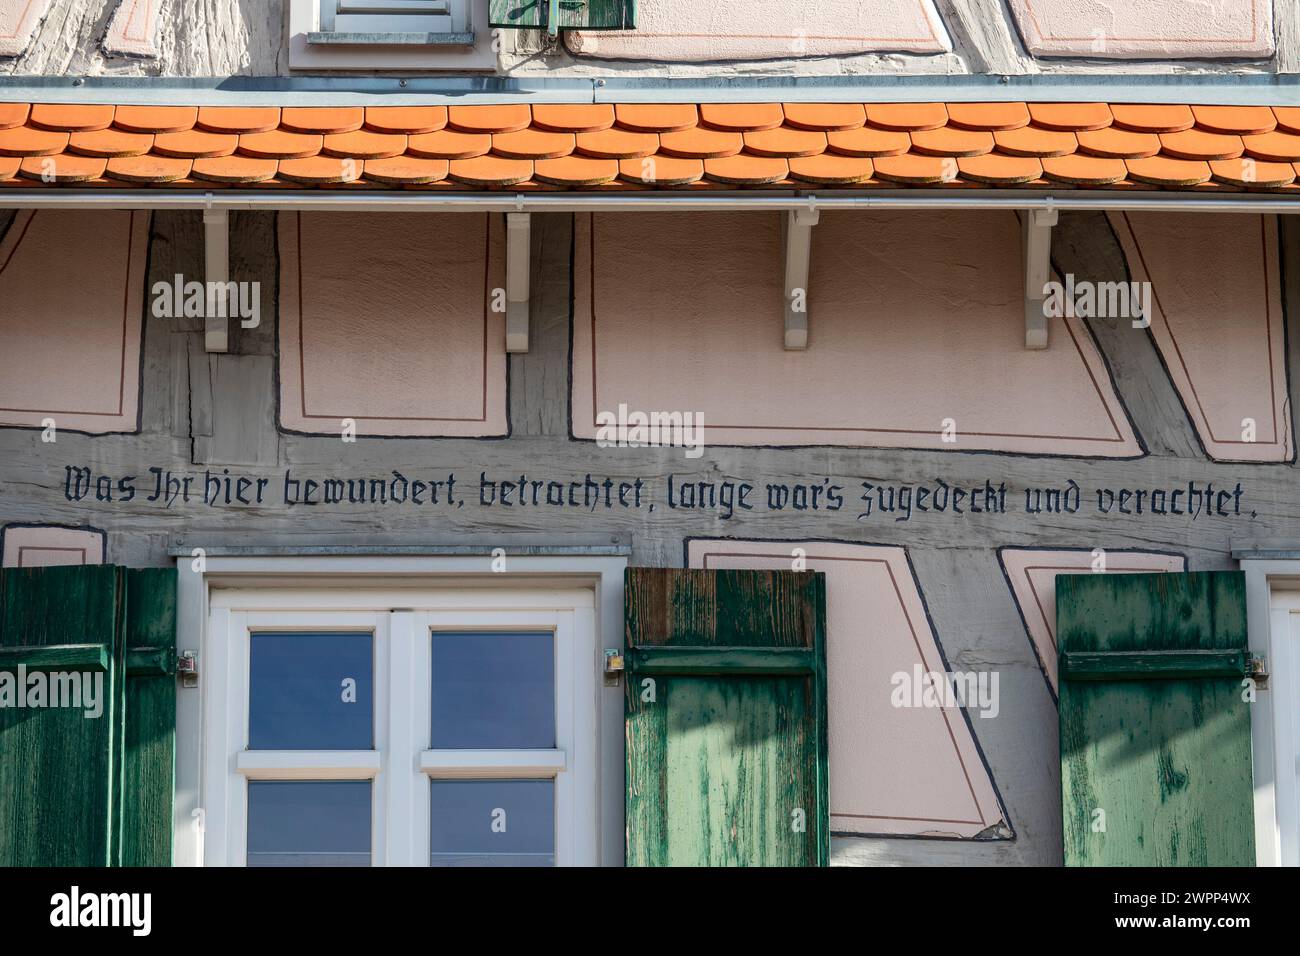 Nehren, Stadtteil Tübingen, Hauptstraße 24, Fachwerkhaus von 1773, Giebeldach mit vier hängenden Dächern. Slogan, was du hier bewunderst, sieh dir das an, es wurde lange Zeit verdeckt und verachtet. Stockfoto